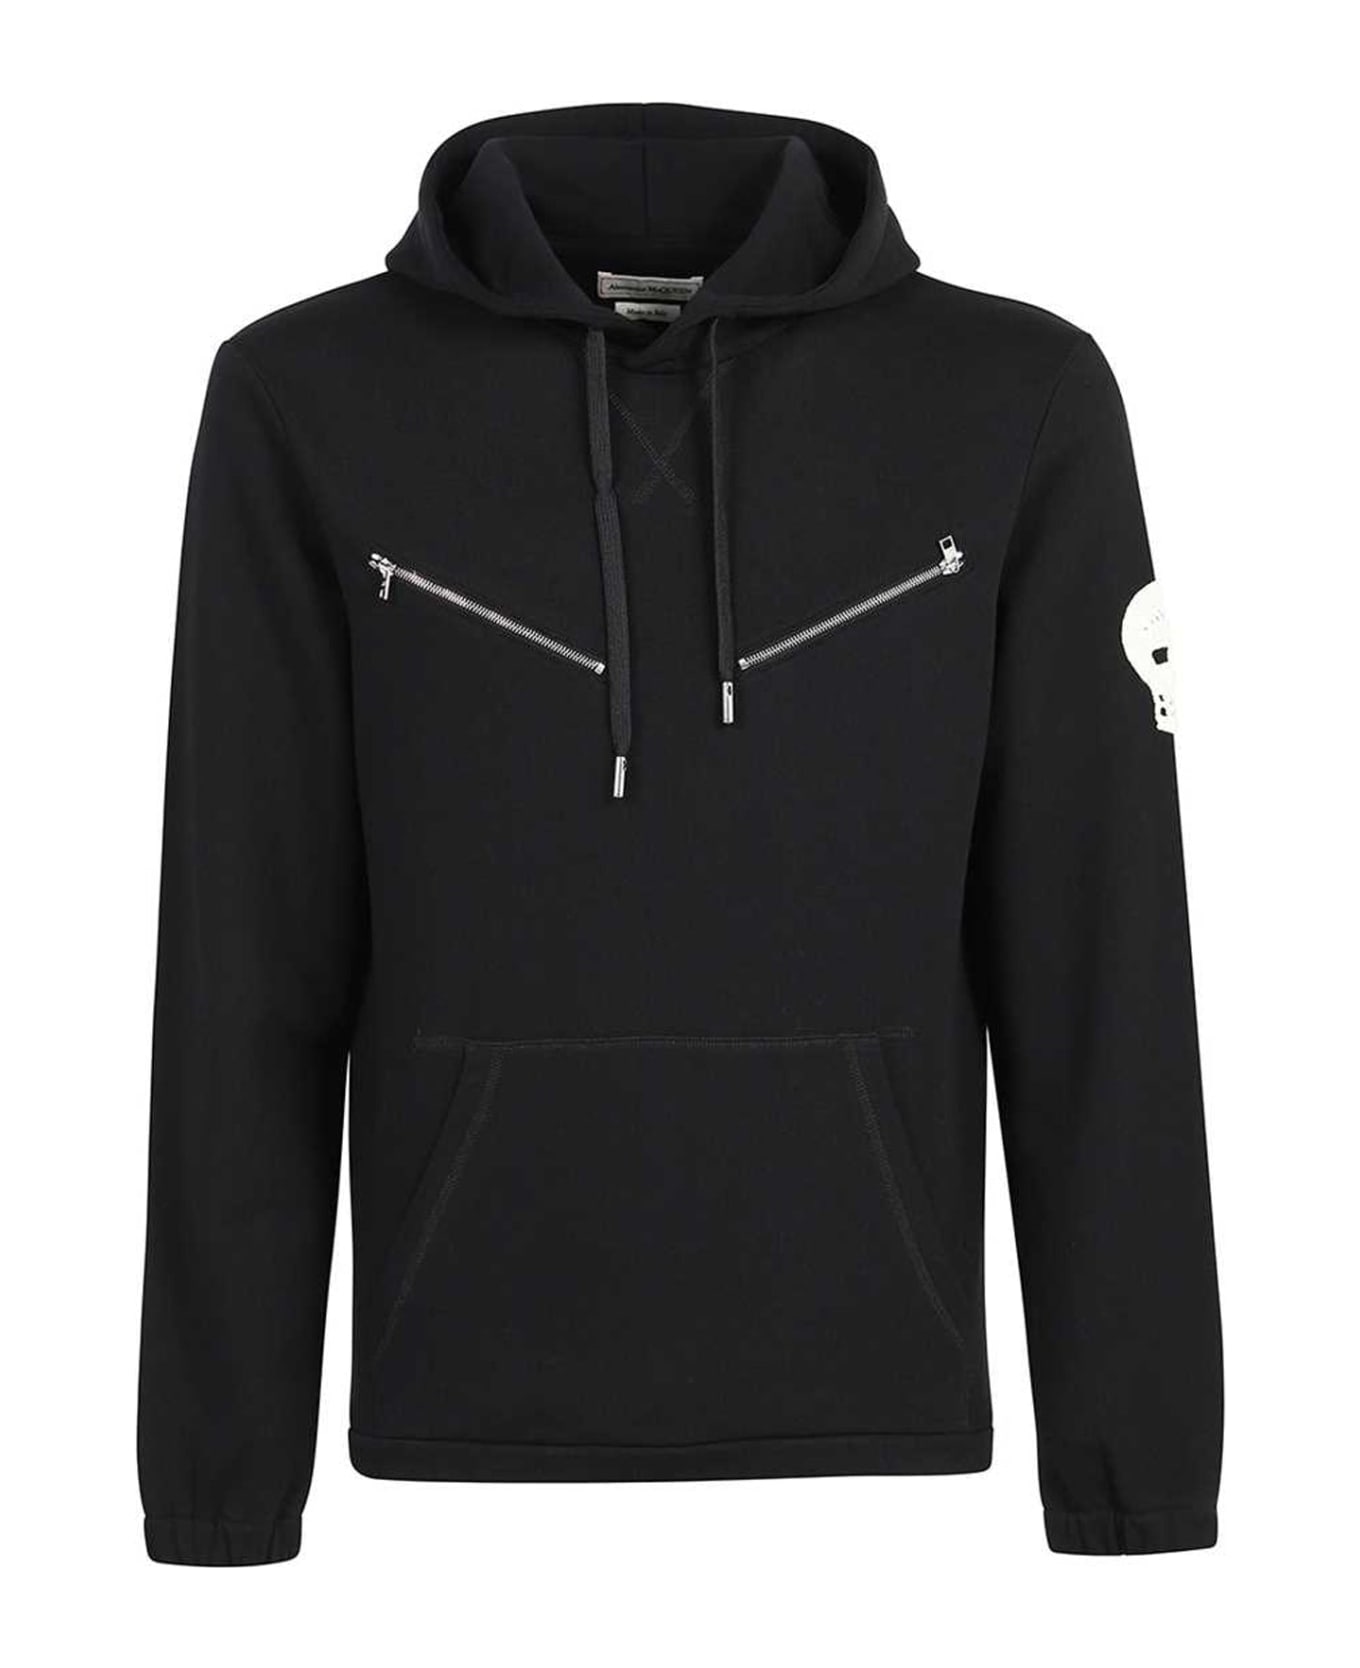 Alexander McQueen Cotton Hooded Sweatshirt - Black